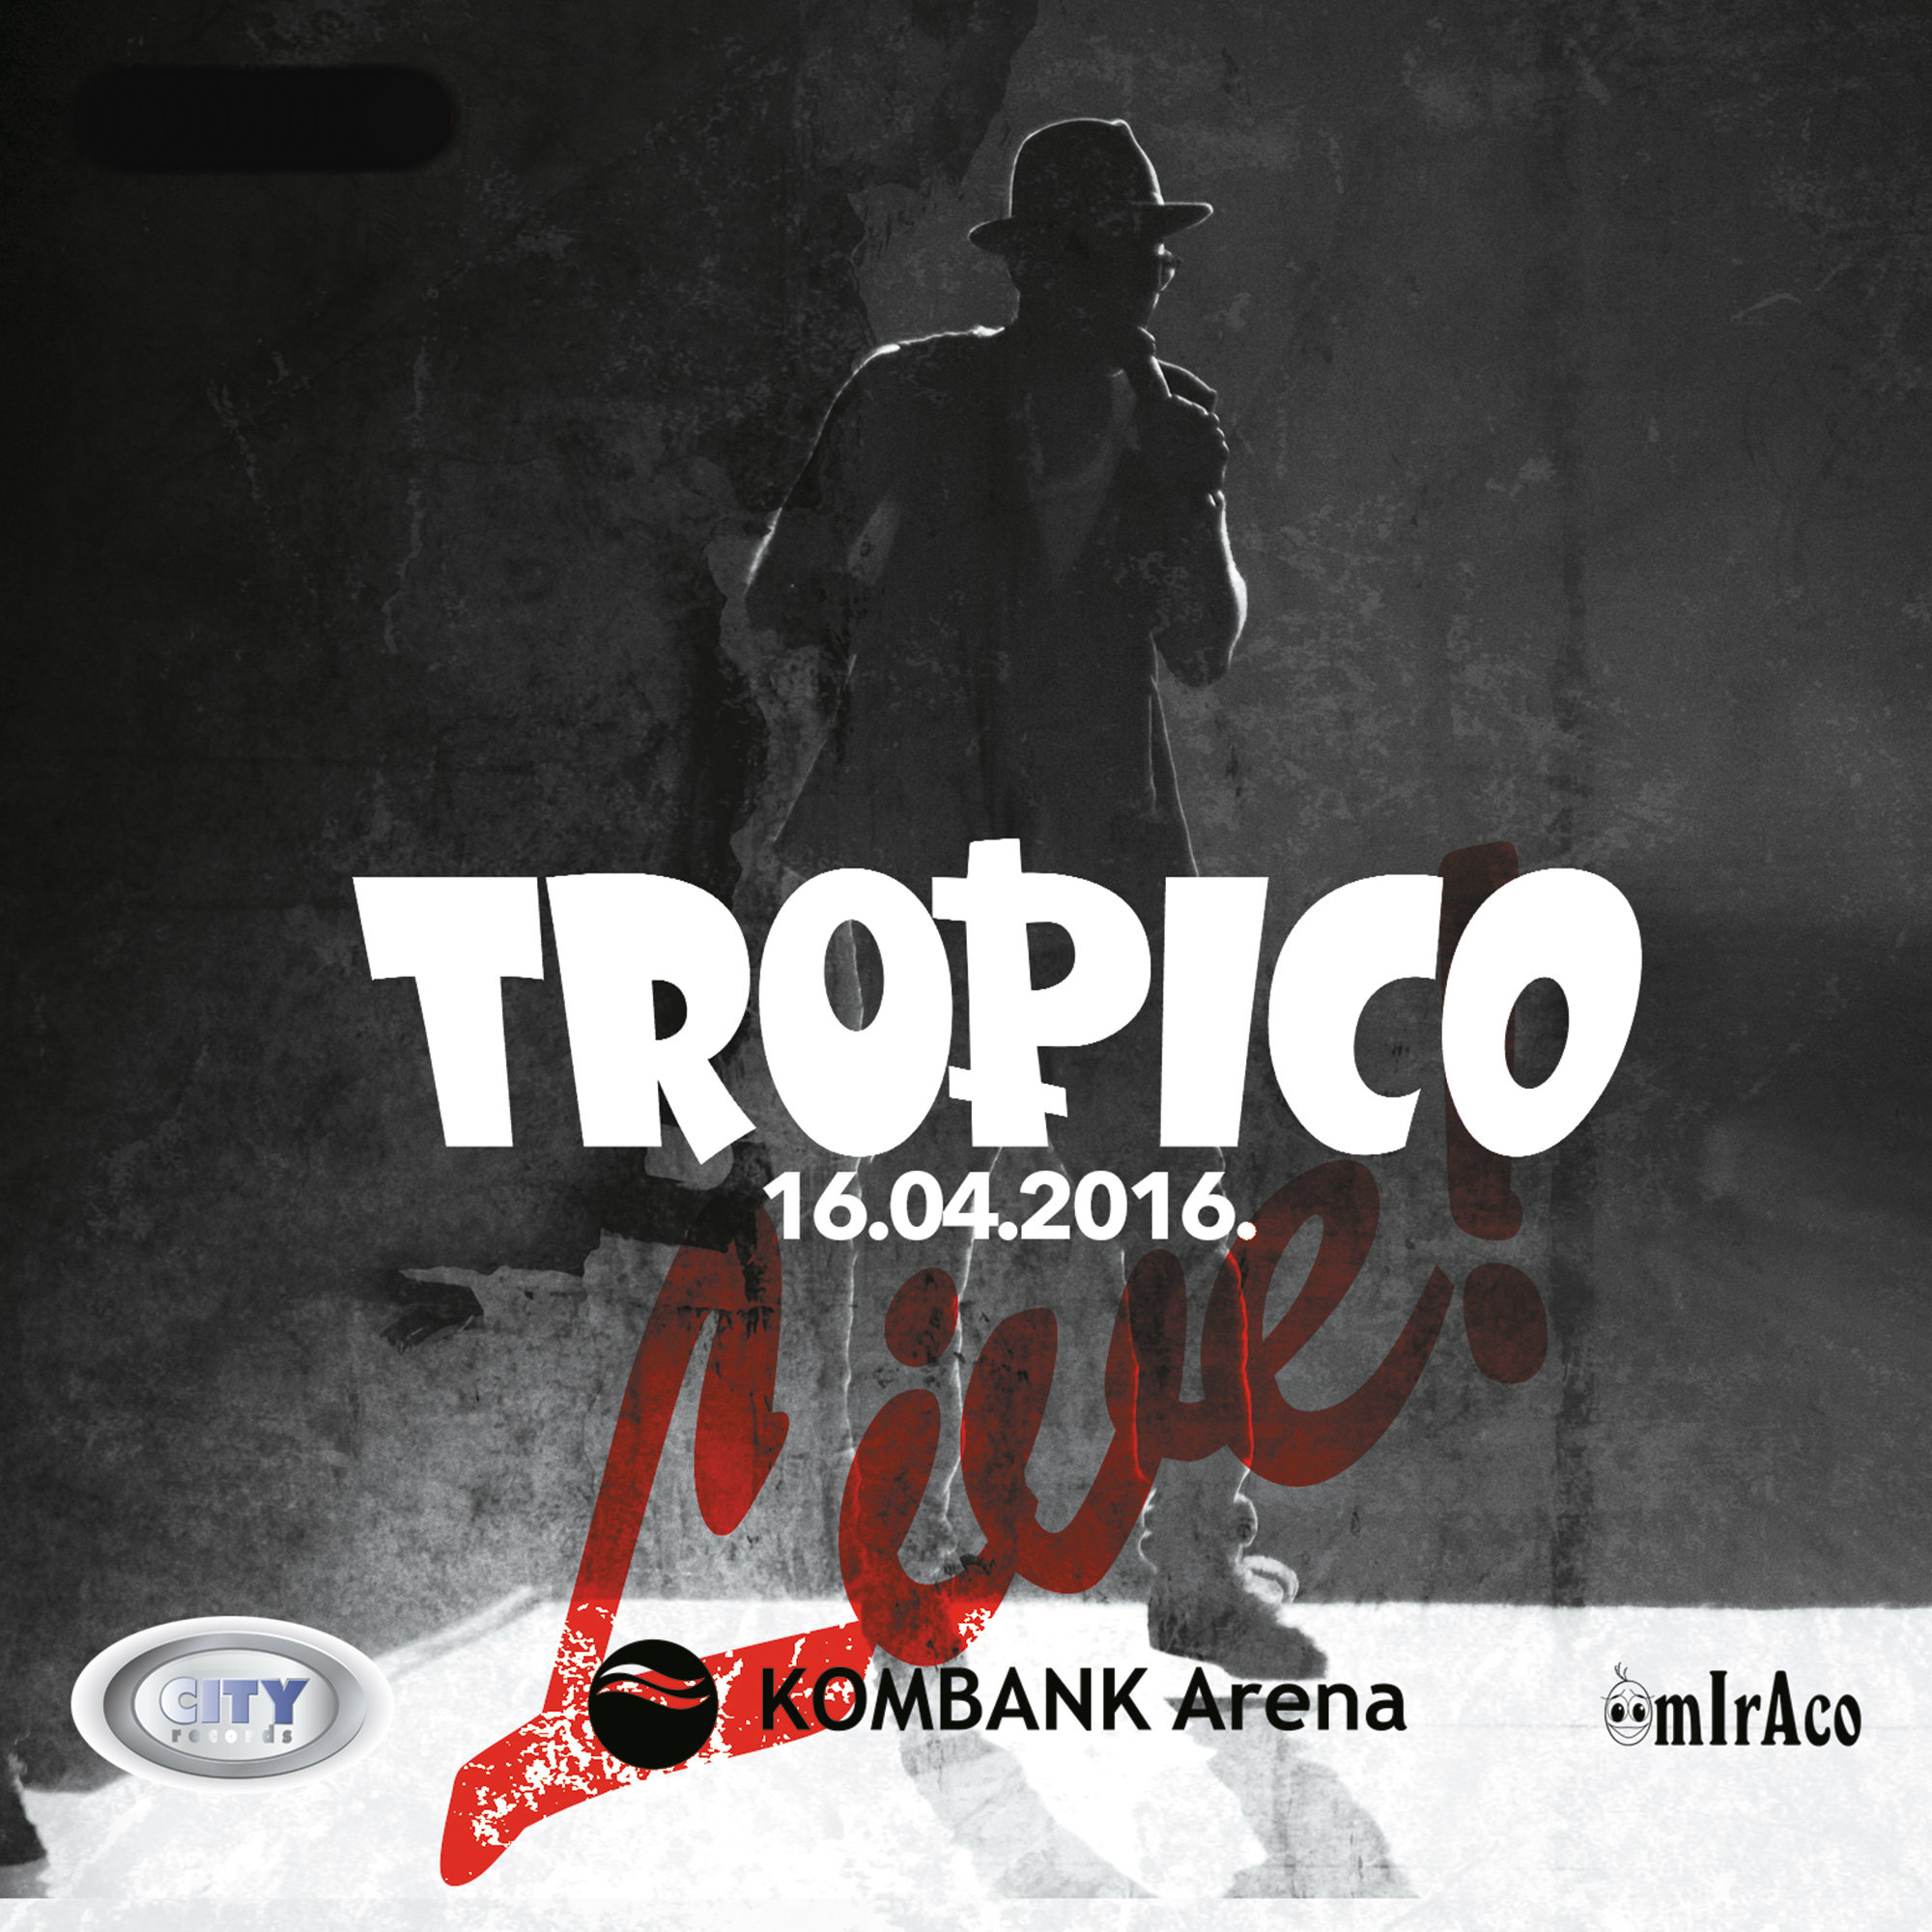 Tropico Live 16.04.2016 KombankArena